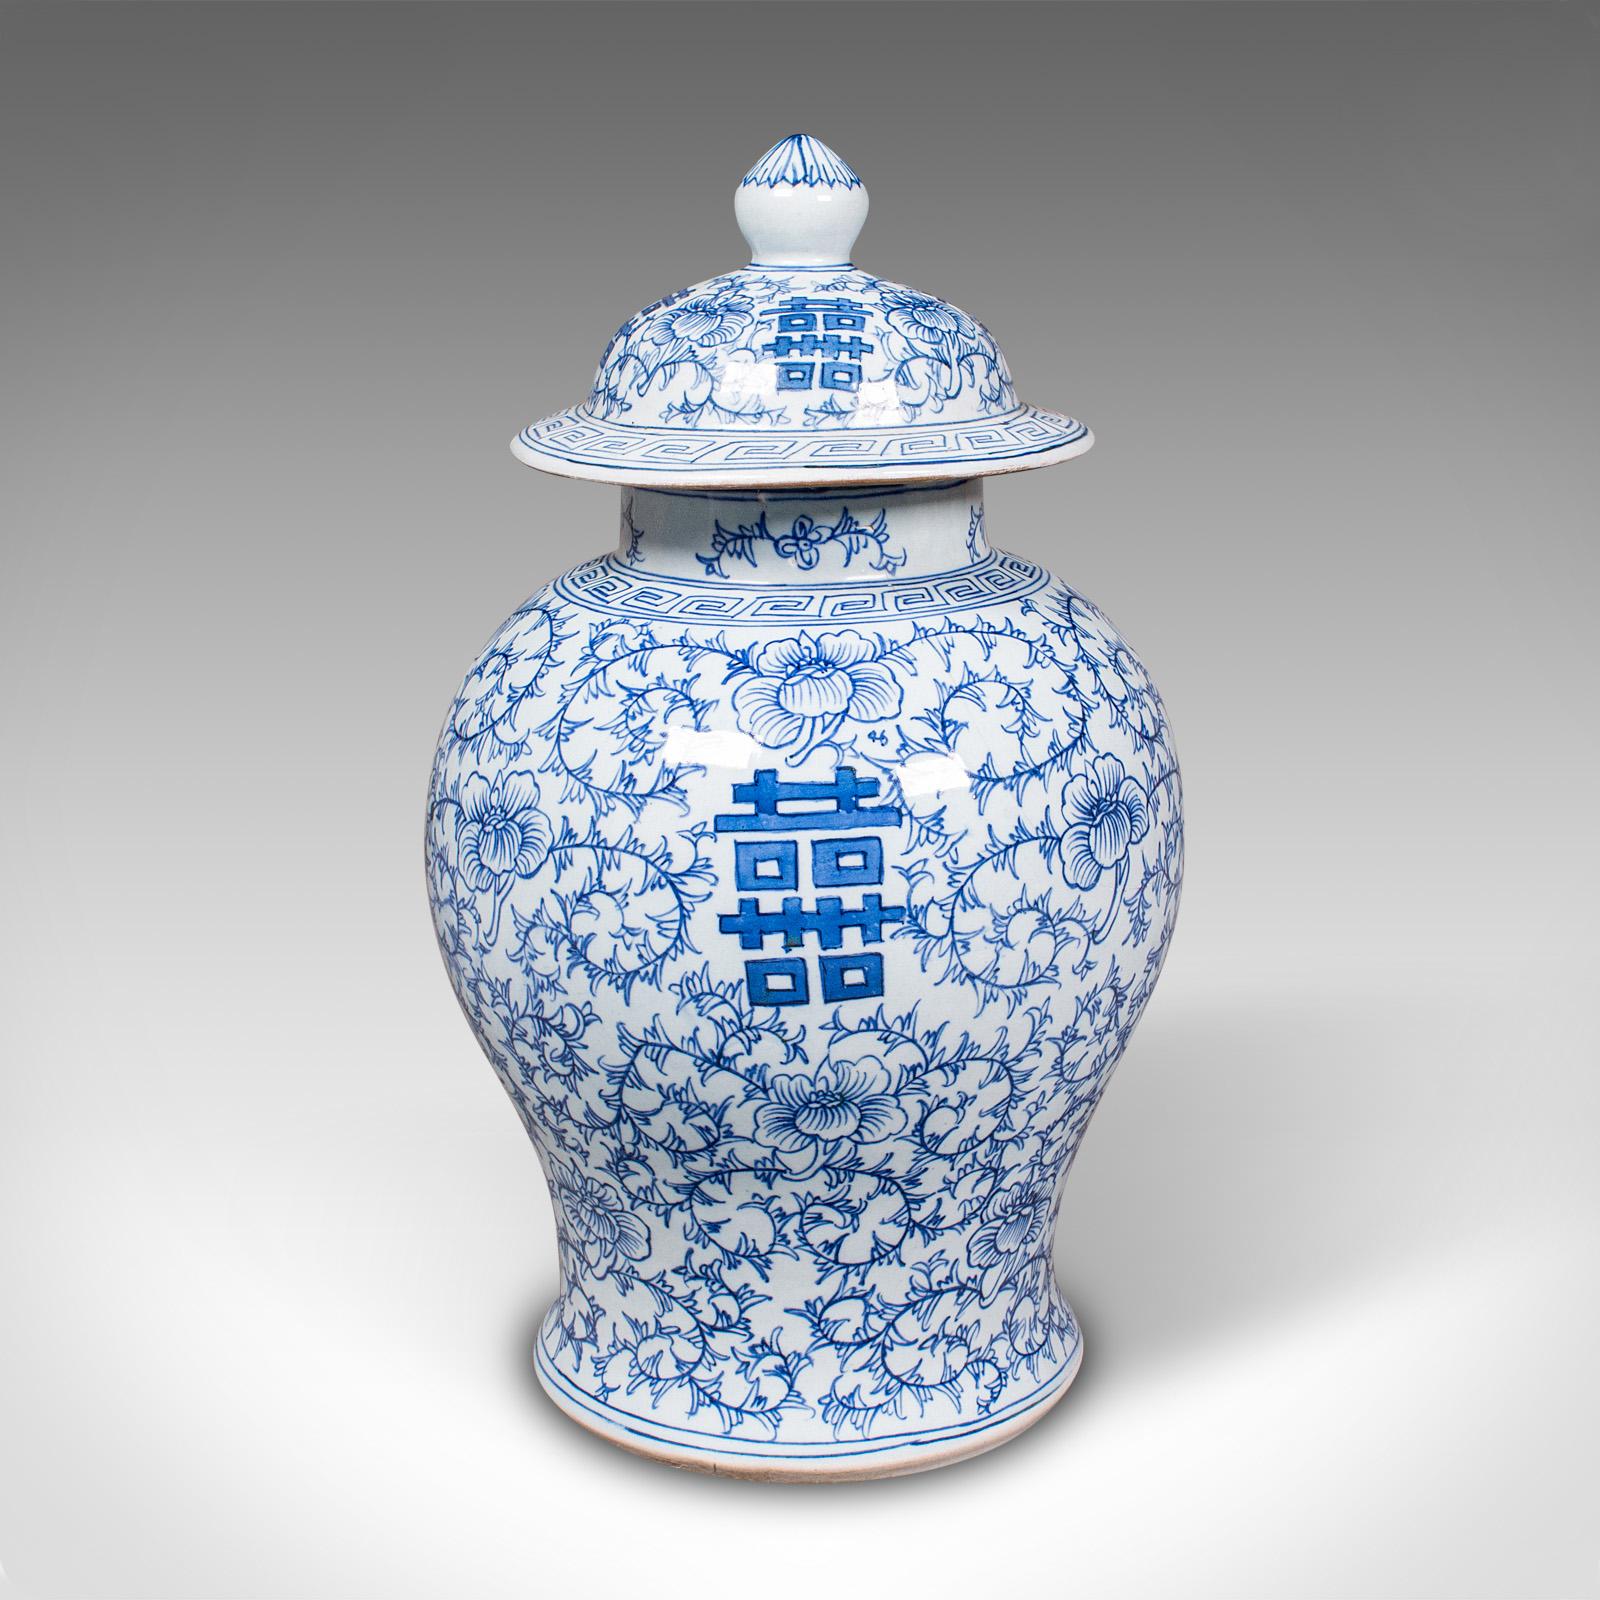 Vintage Decorative Flower Vase, Chinese, Ceramic, Urn, Spice Jar, Art Deco, 1930 For Sale 1